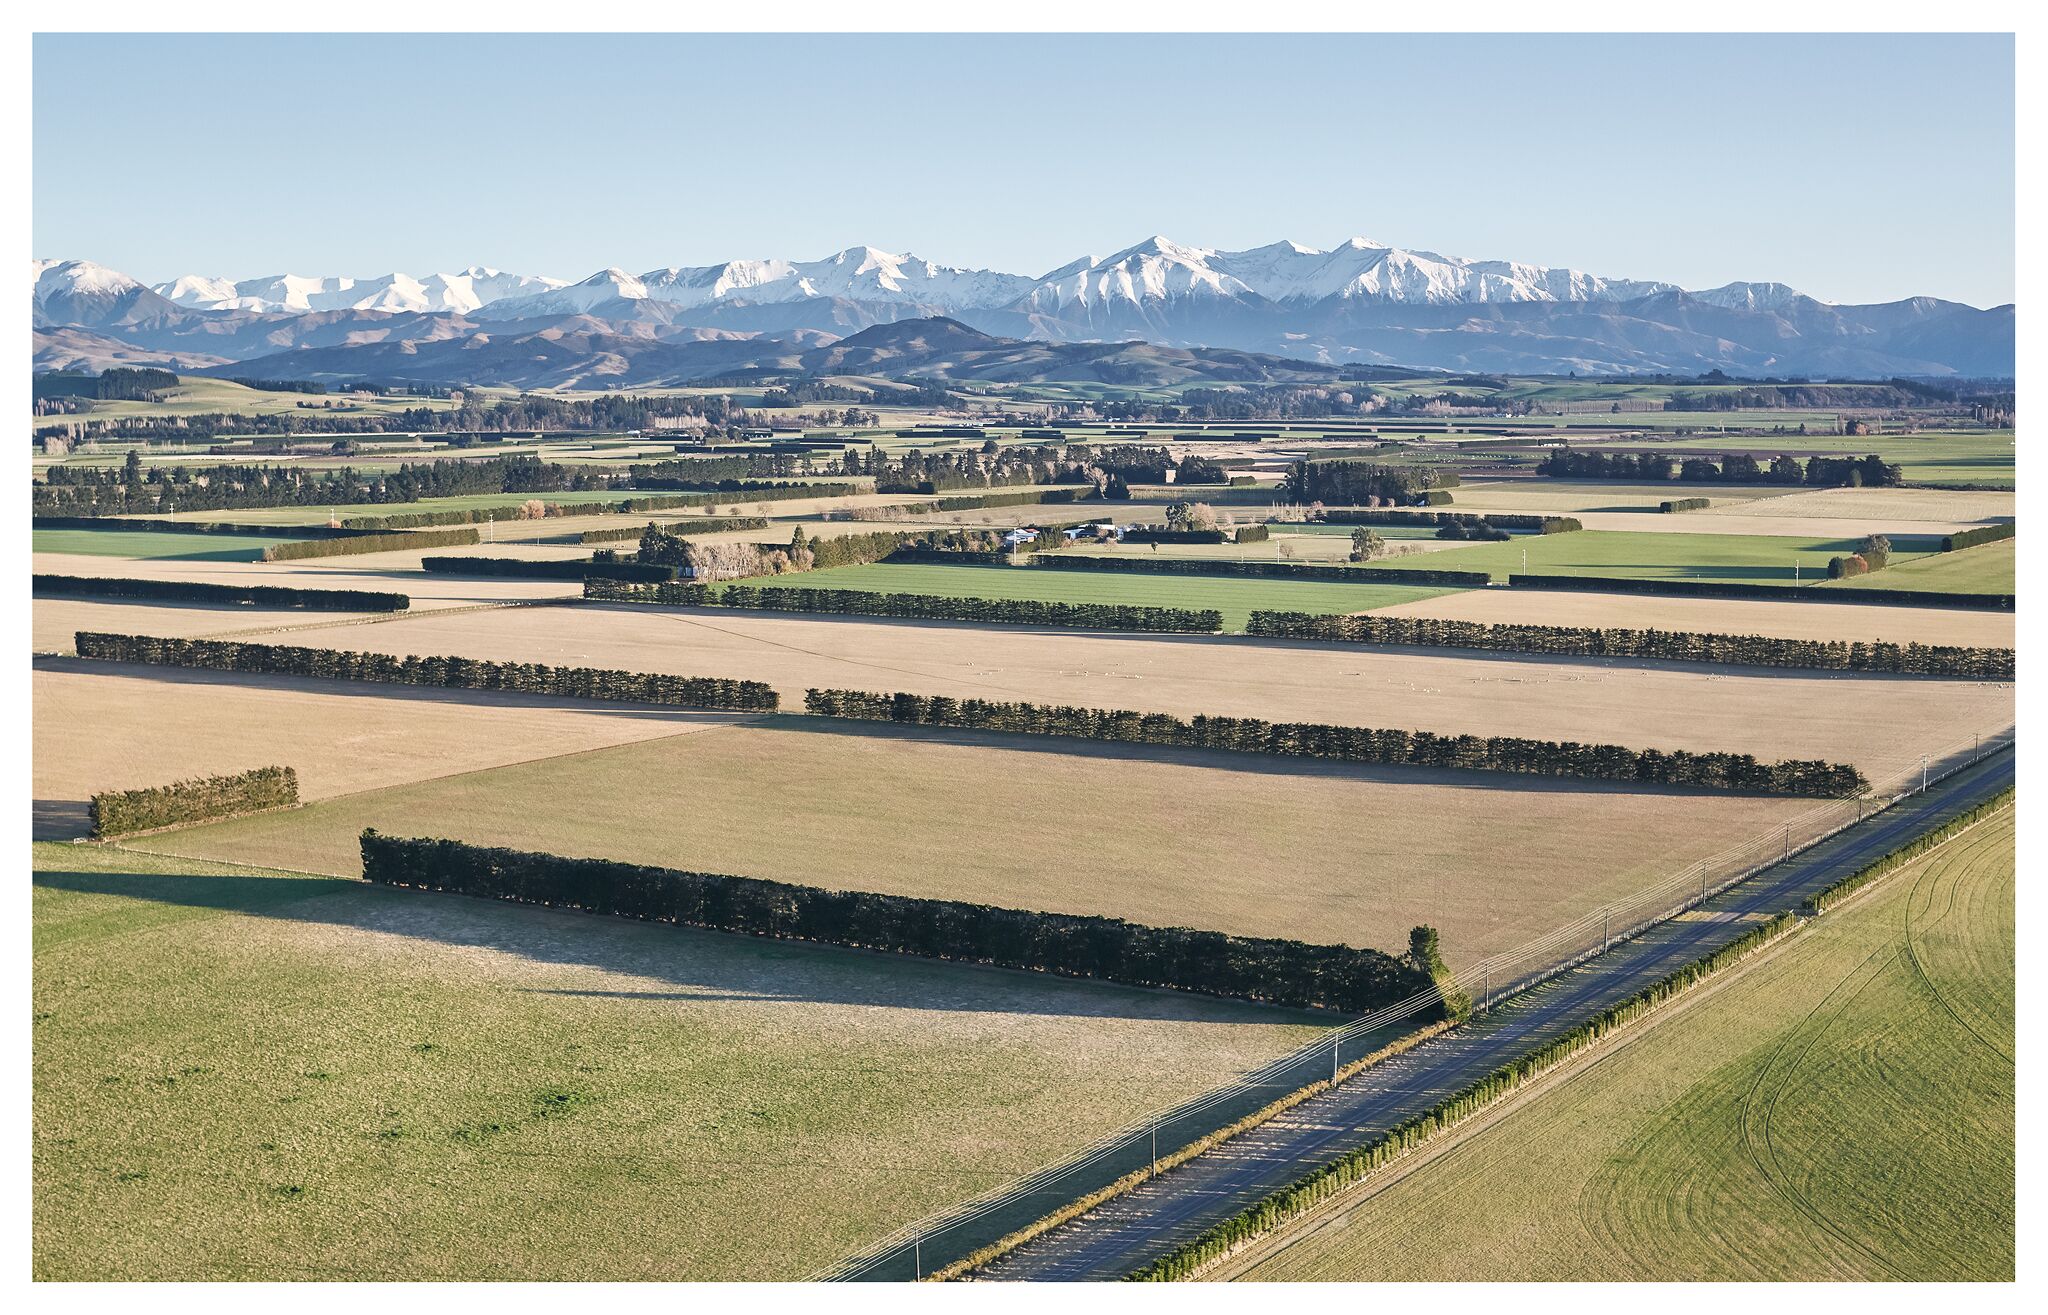 Farmland in New Zealand, courtesy Jose Ahedo